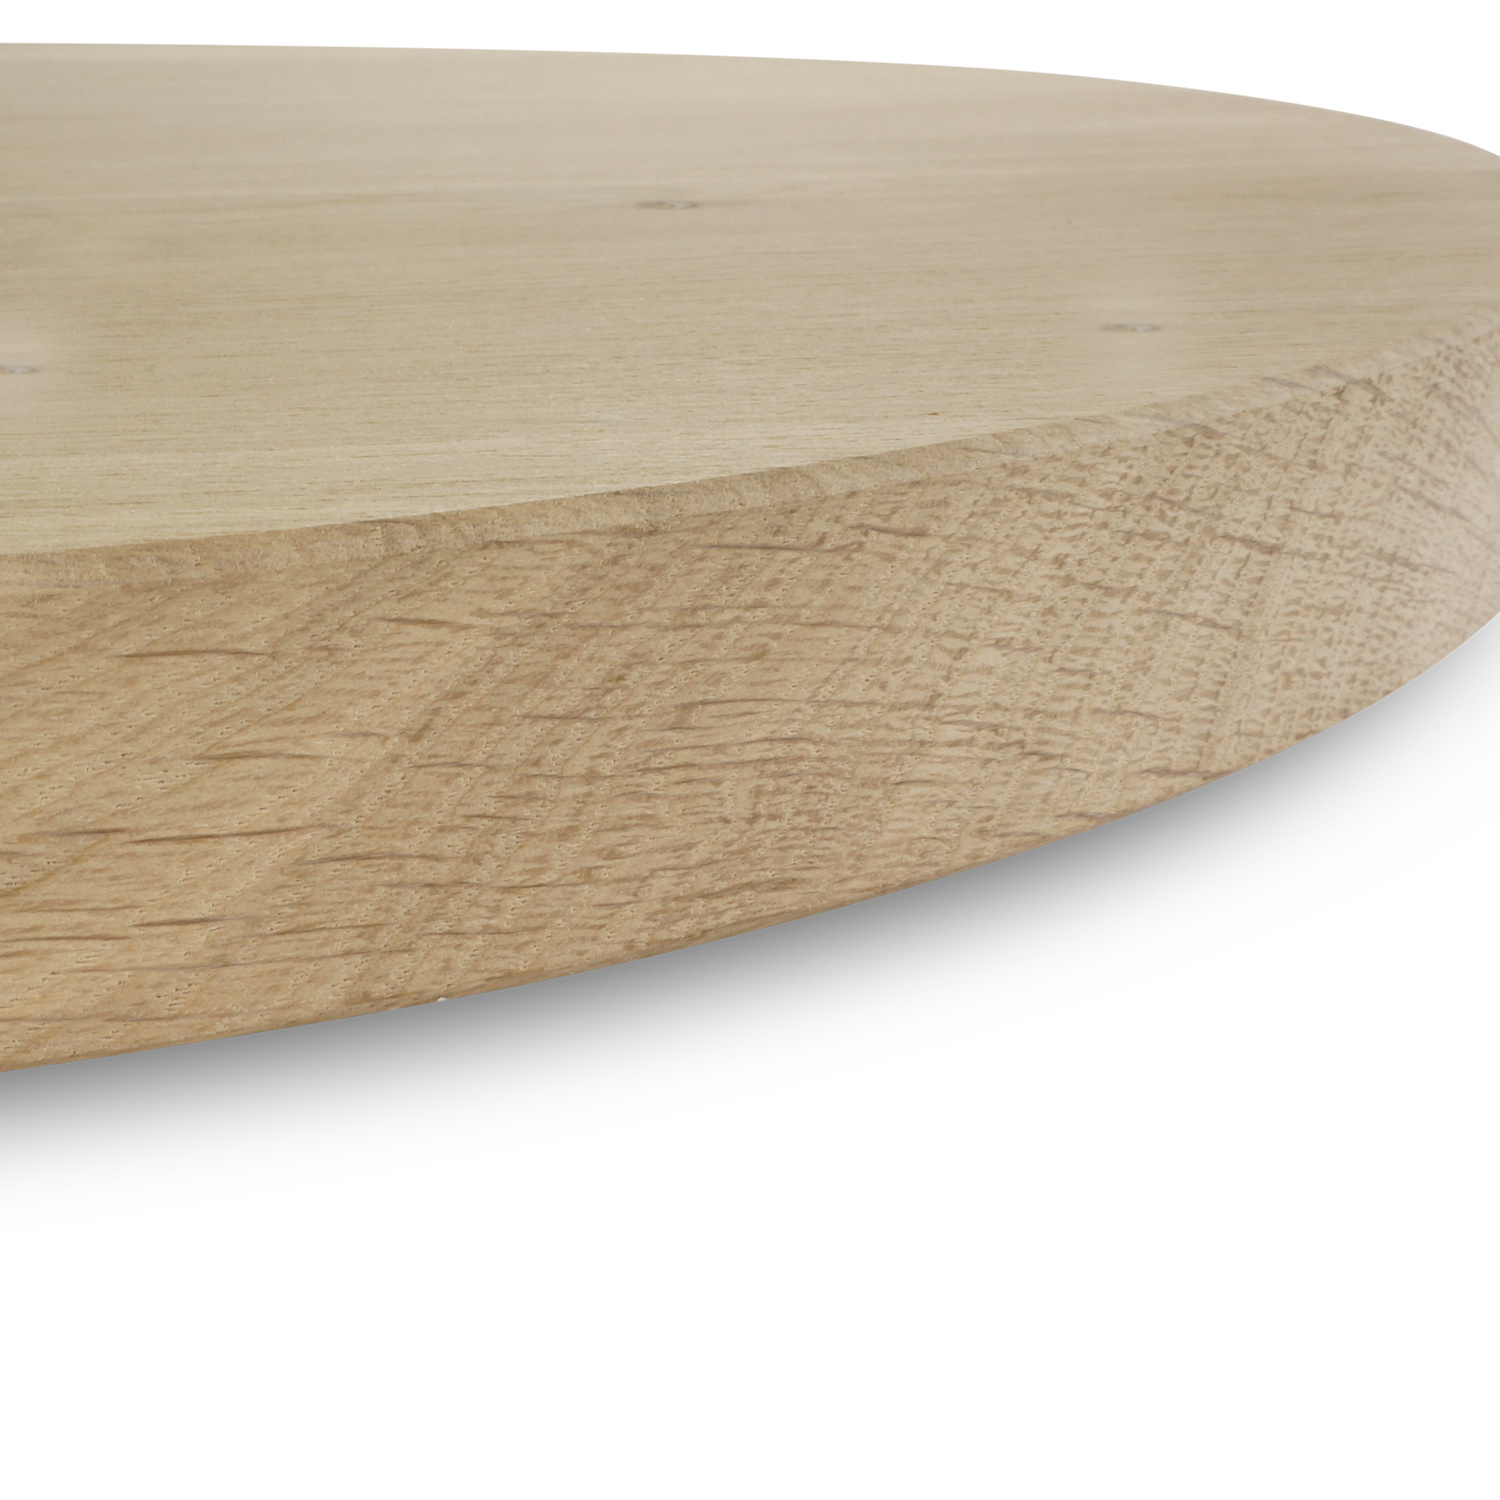  Tischplatte Eiche rund nach Maß - 2,5 cm dick - Eichenholz rustikal - Durchmesser: 30 - 180 cm - Eiche Tischplatte rund massiv - verleimt & künstlich getrocknet (HF 8-12%)